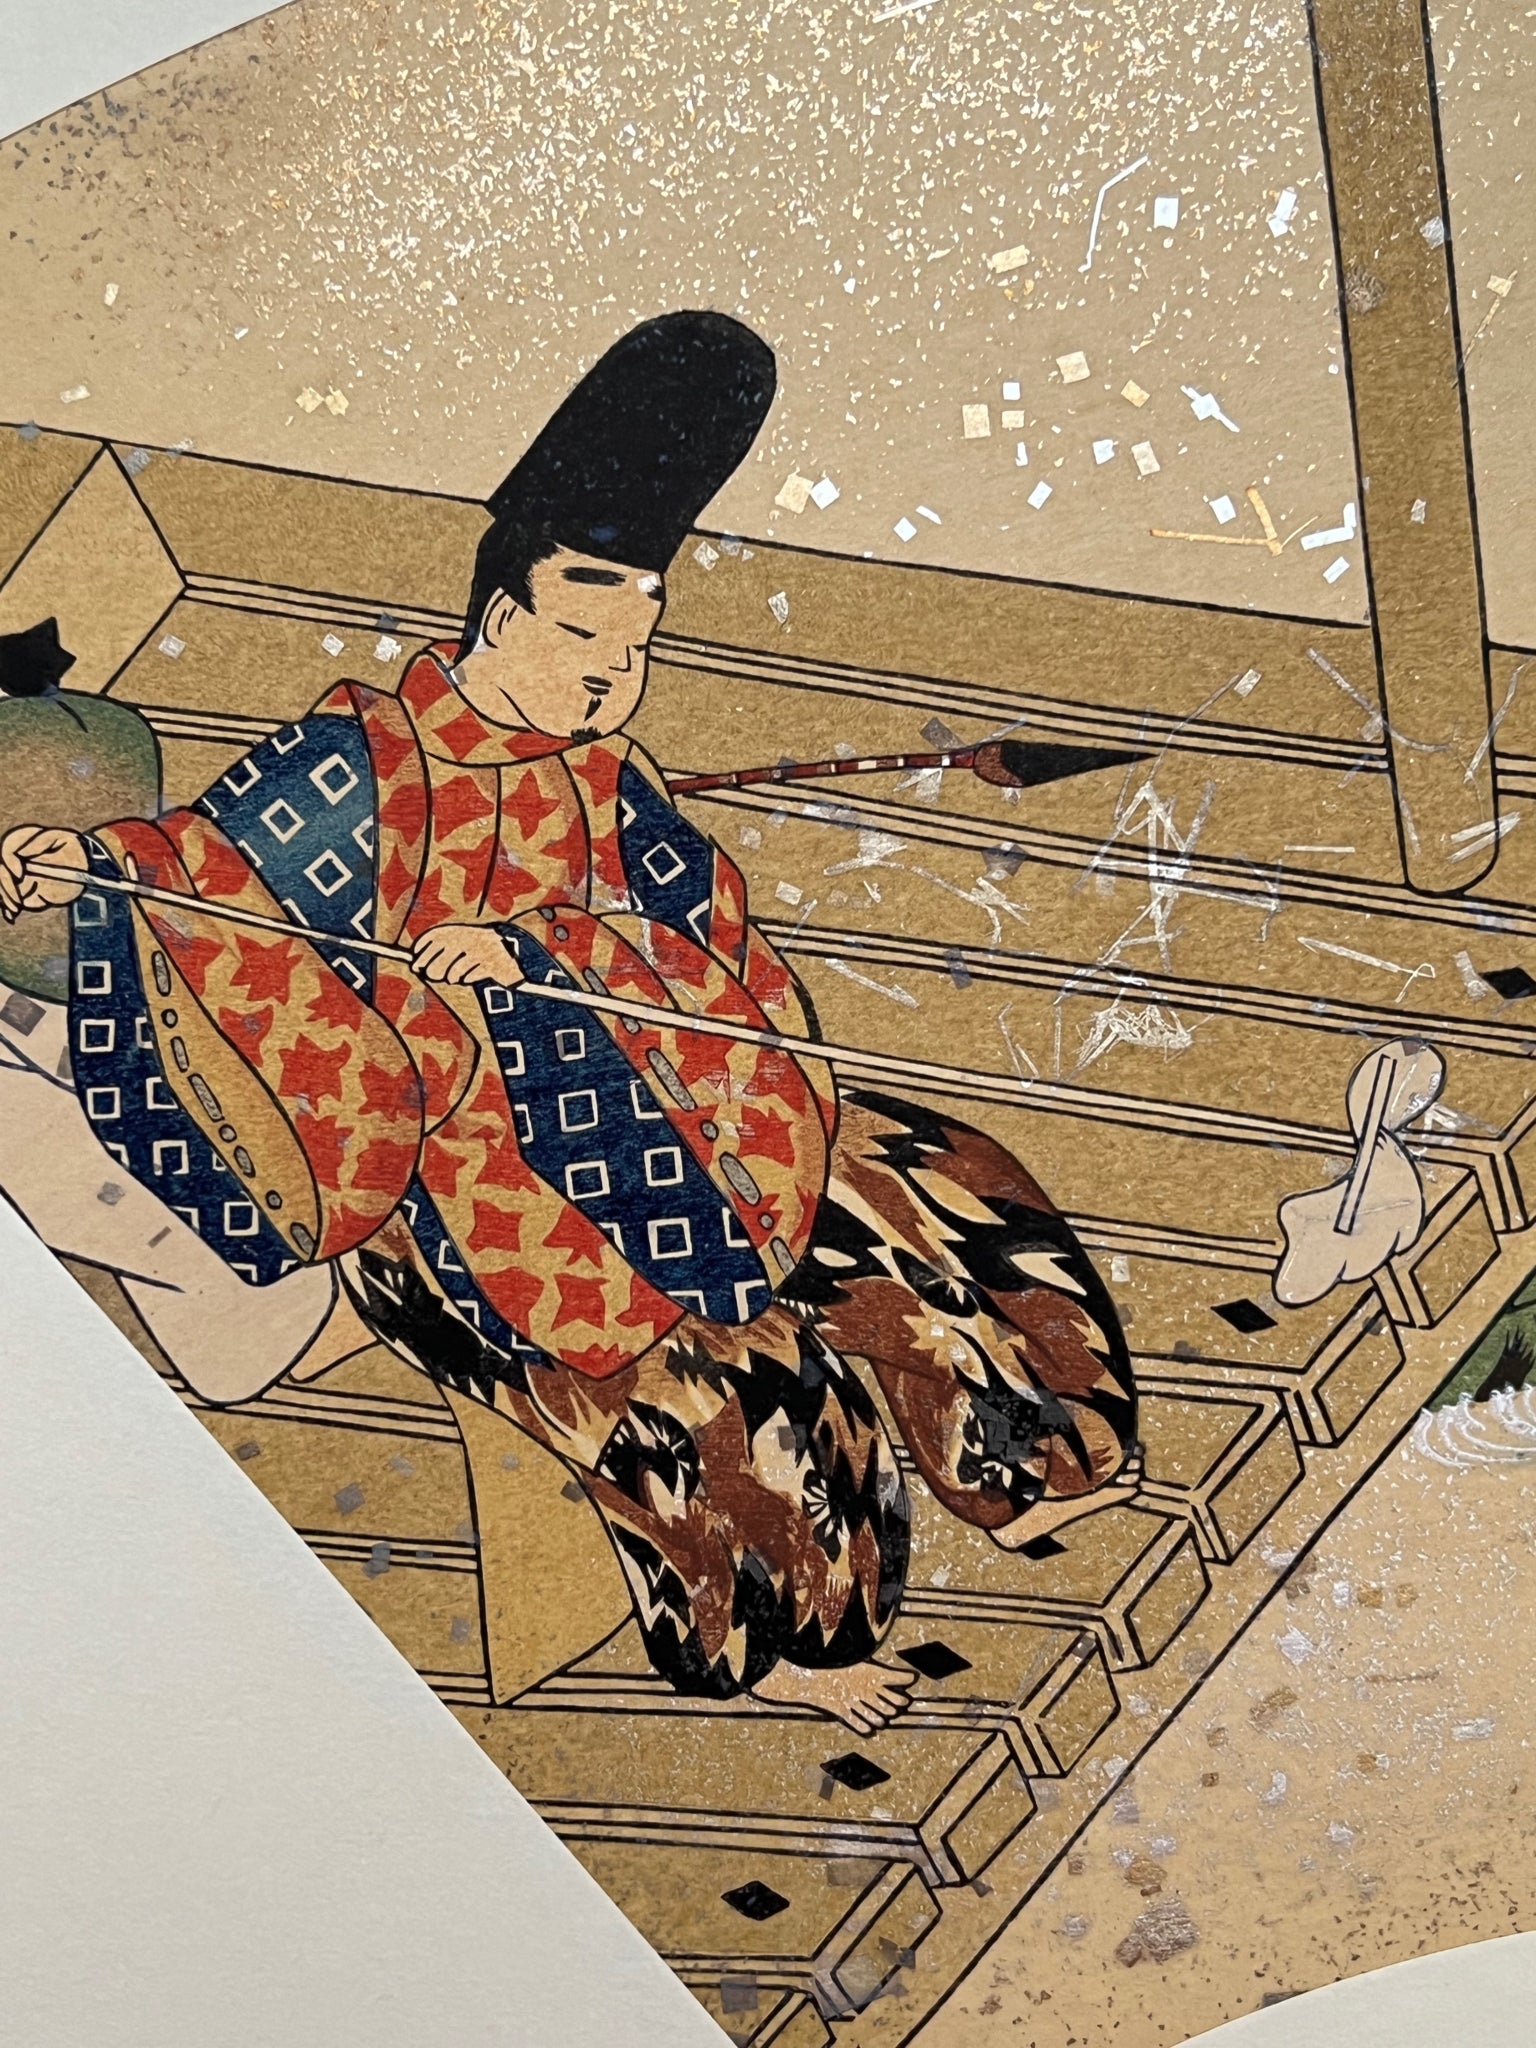 Estampe japonaise en forme d'éventail parsemée de fragments d'or et d'argent, gros plan sur l'homme passant la serpillère sur la terrasse à gauche de l'estampe.